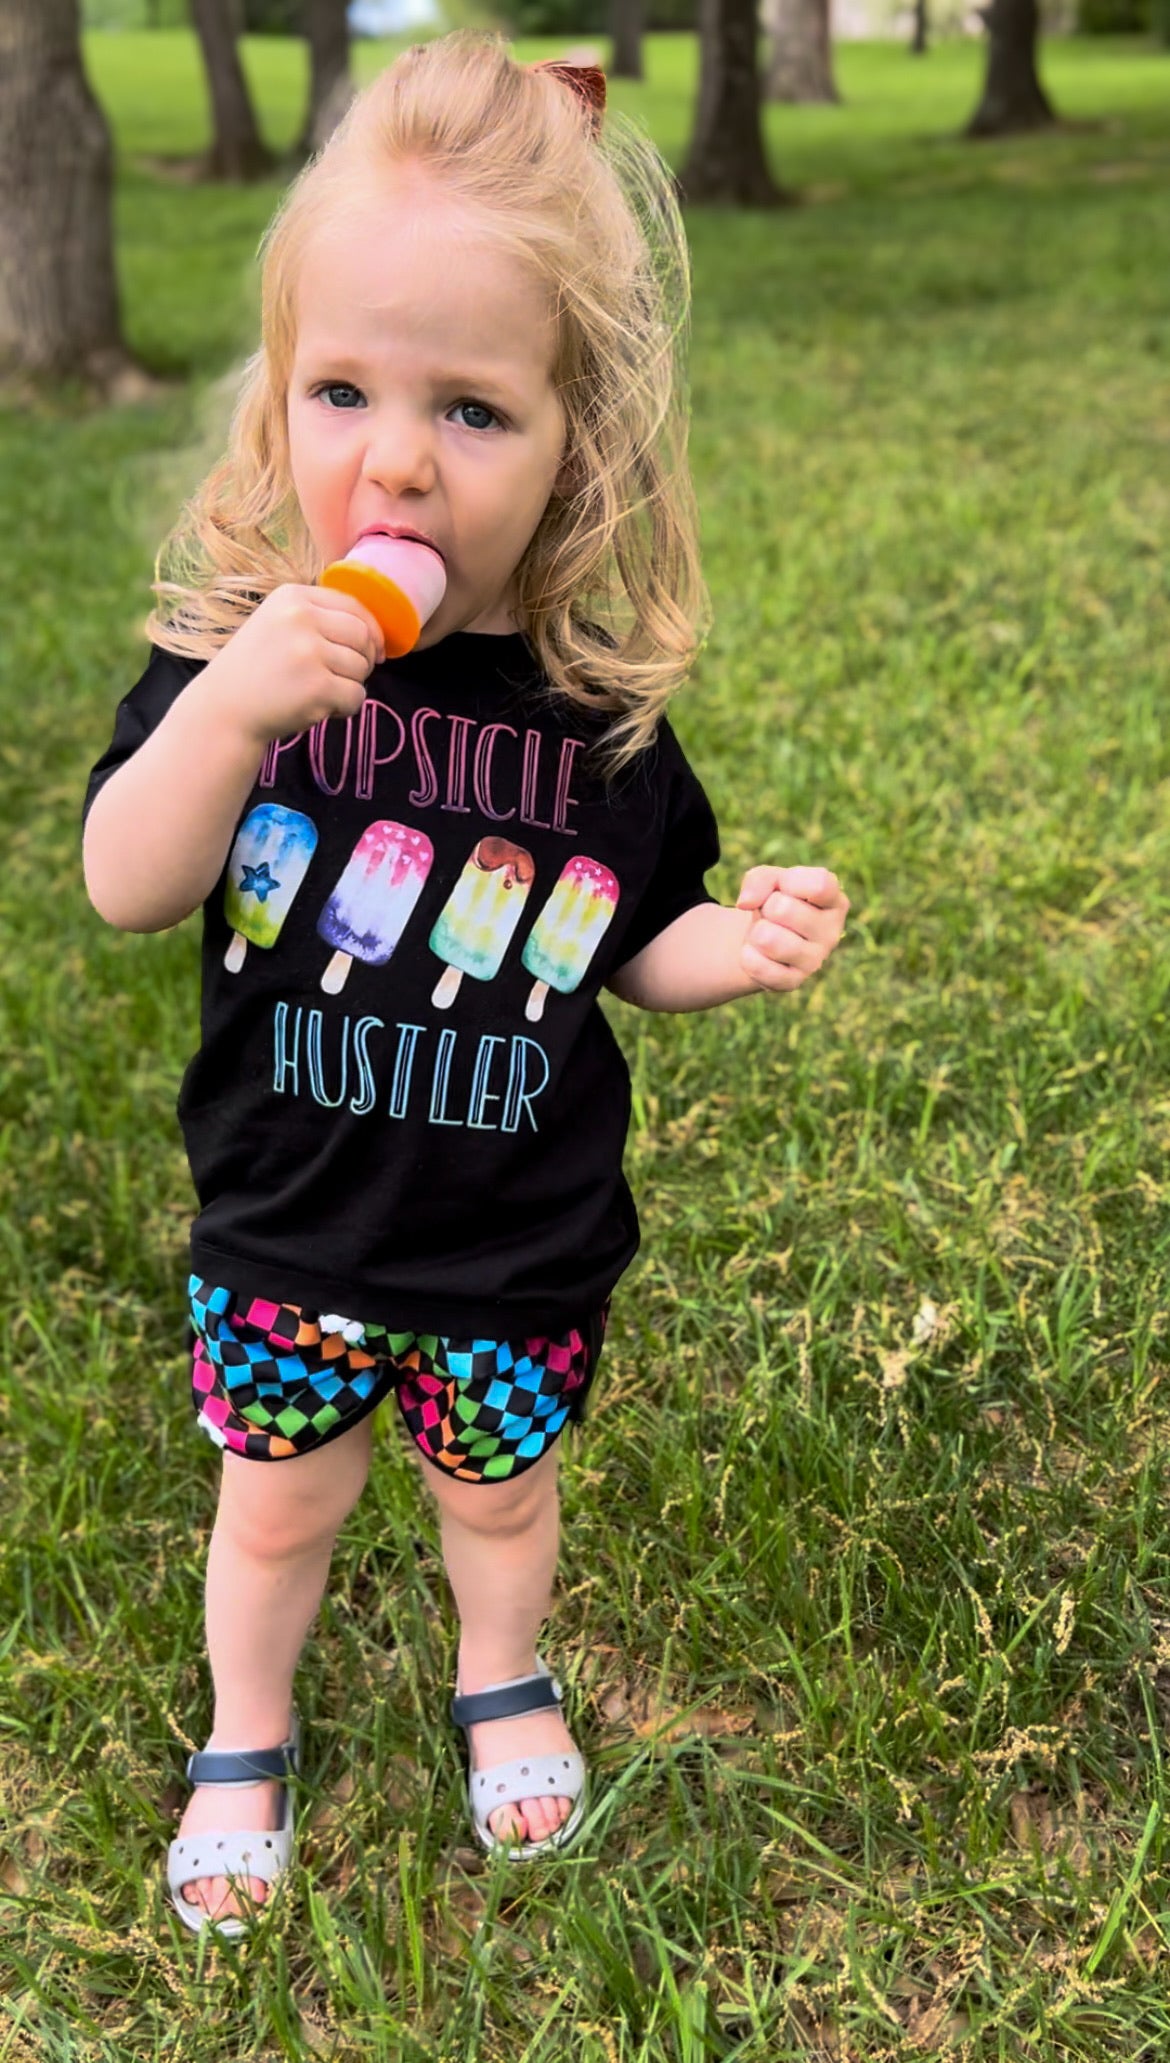 Popsicle hustler